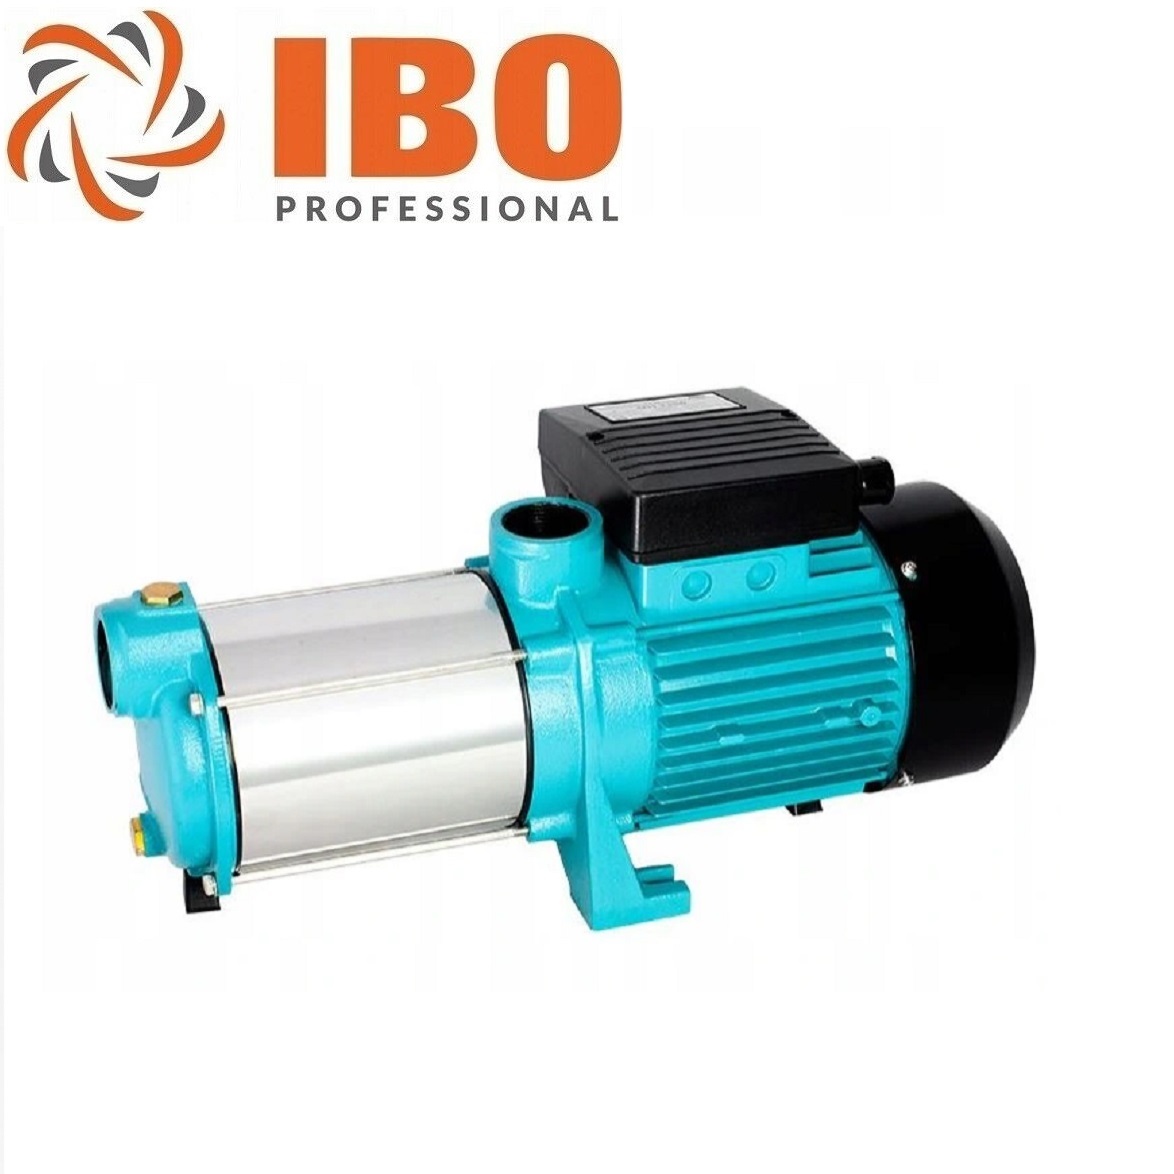 IBO Hochdruck Gartenpumpe 1800 Watt - 6000 L/h - 8 bar Hauswasserwerk  Kreiselpumpe